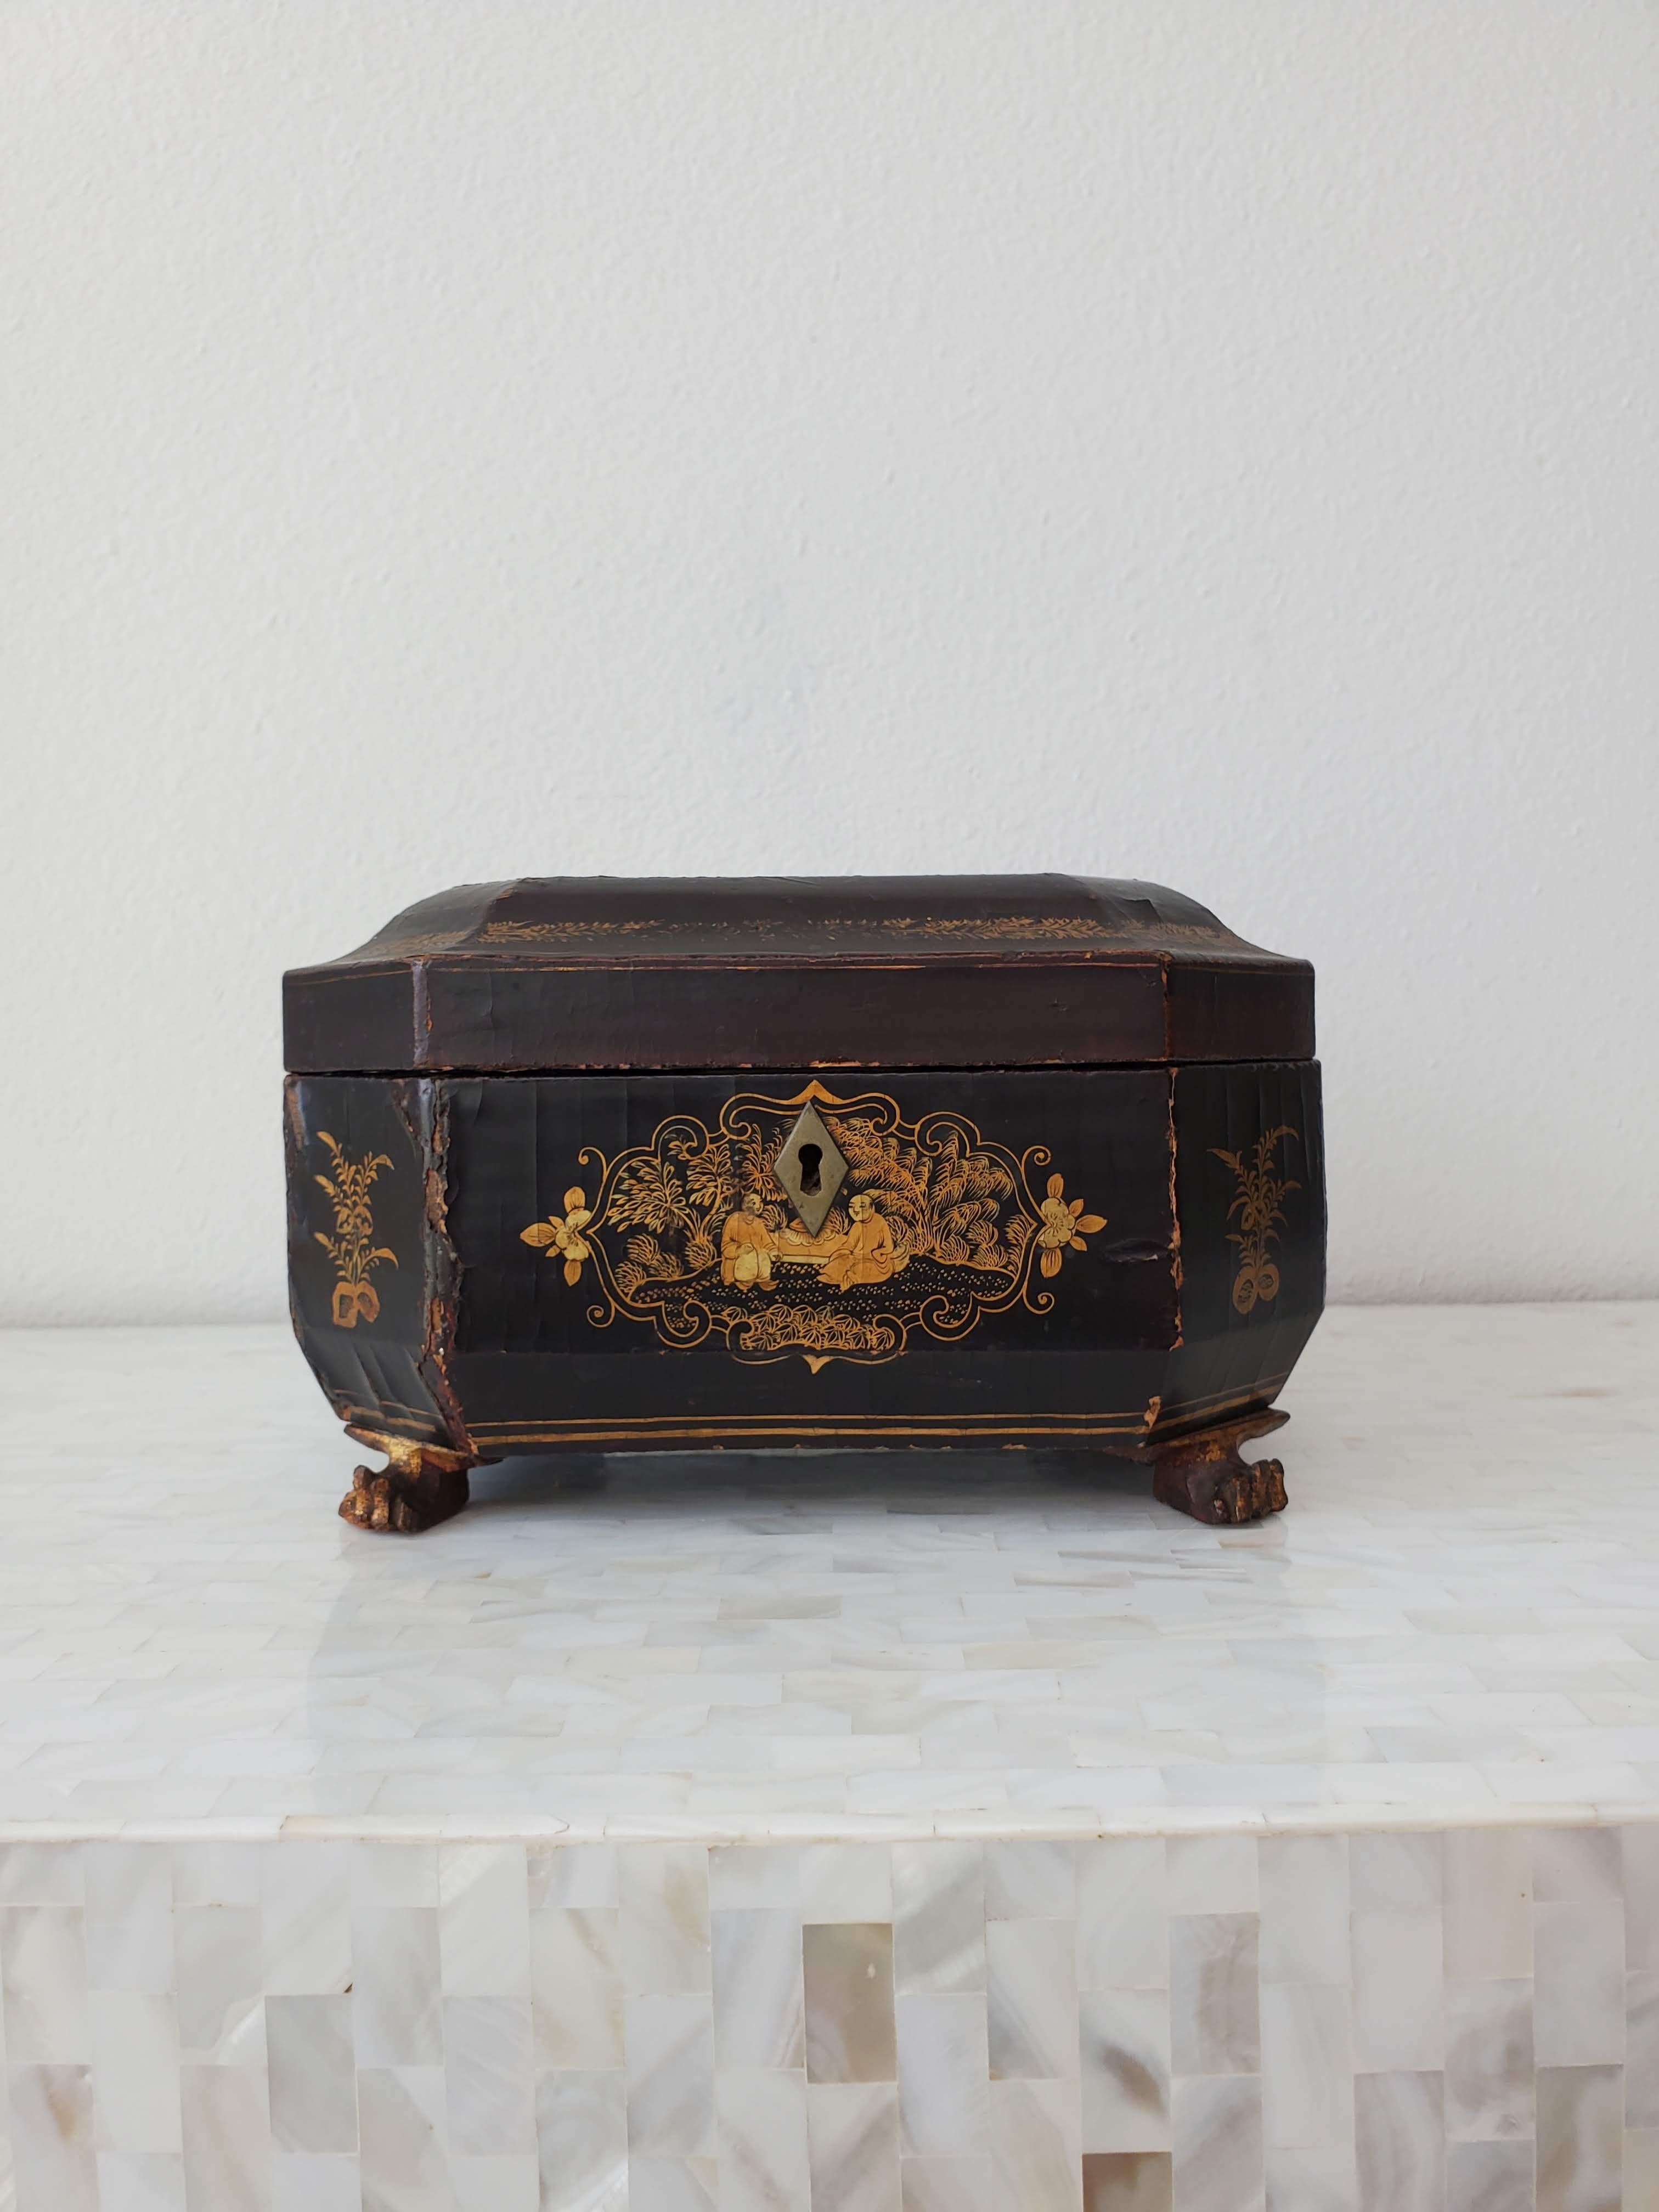 Superbe boîte à thé / boîte de table décorative ancienne de la dynastie Qing, exportée de Chine, avec deux boîtes. circa 1860

Fabriqué à la main en Chine pour le marché européen à l'époque où le style oriental/asiatique rare et exotique était au